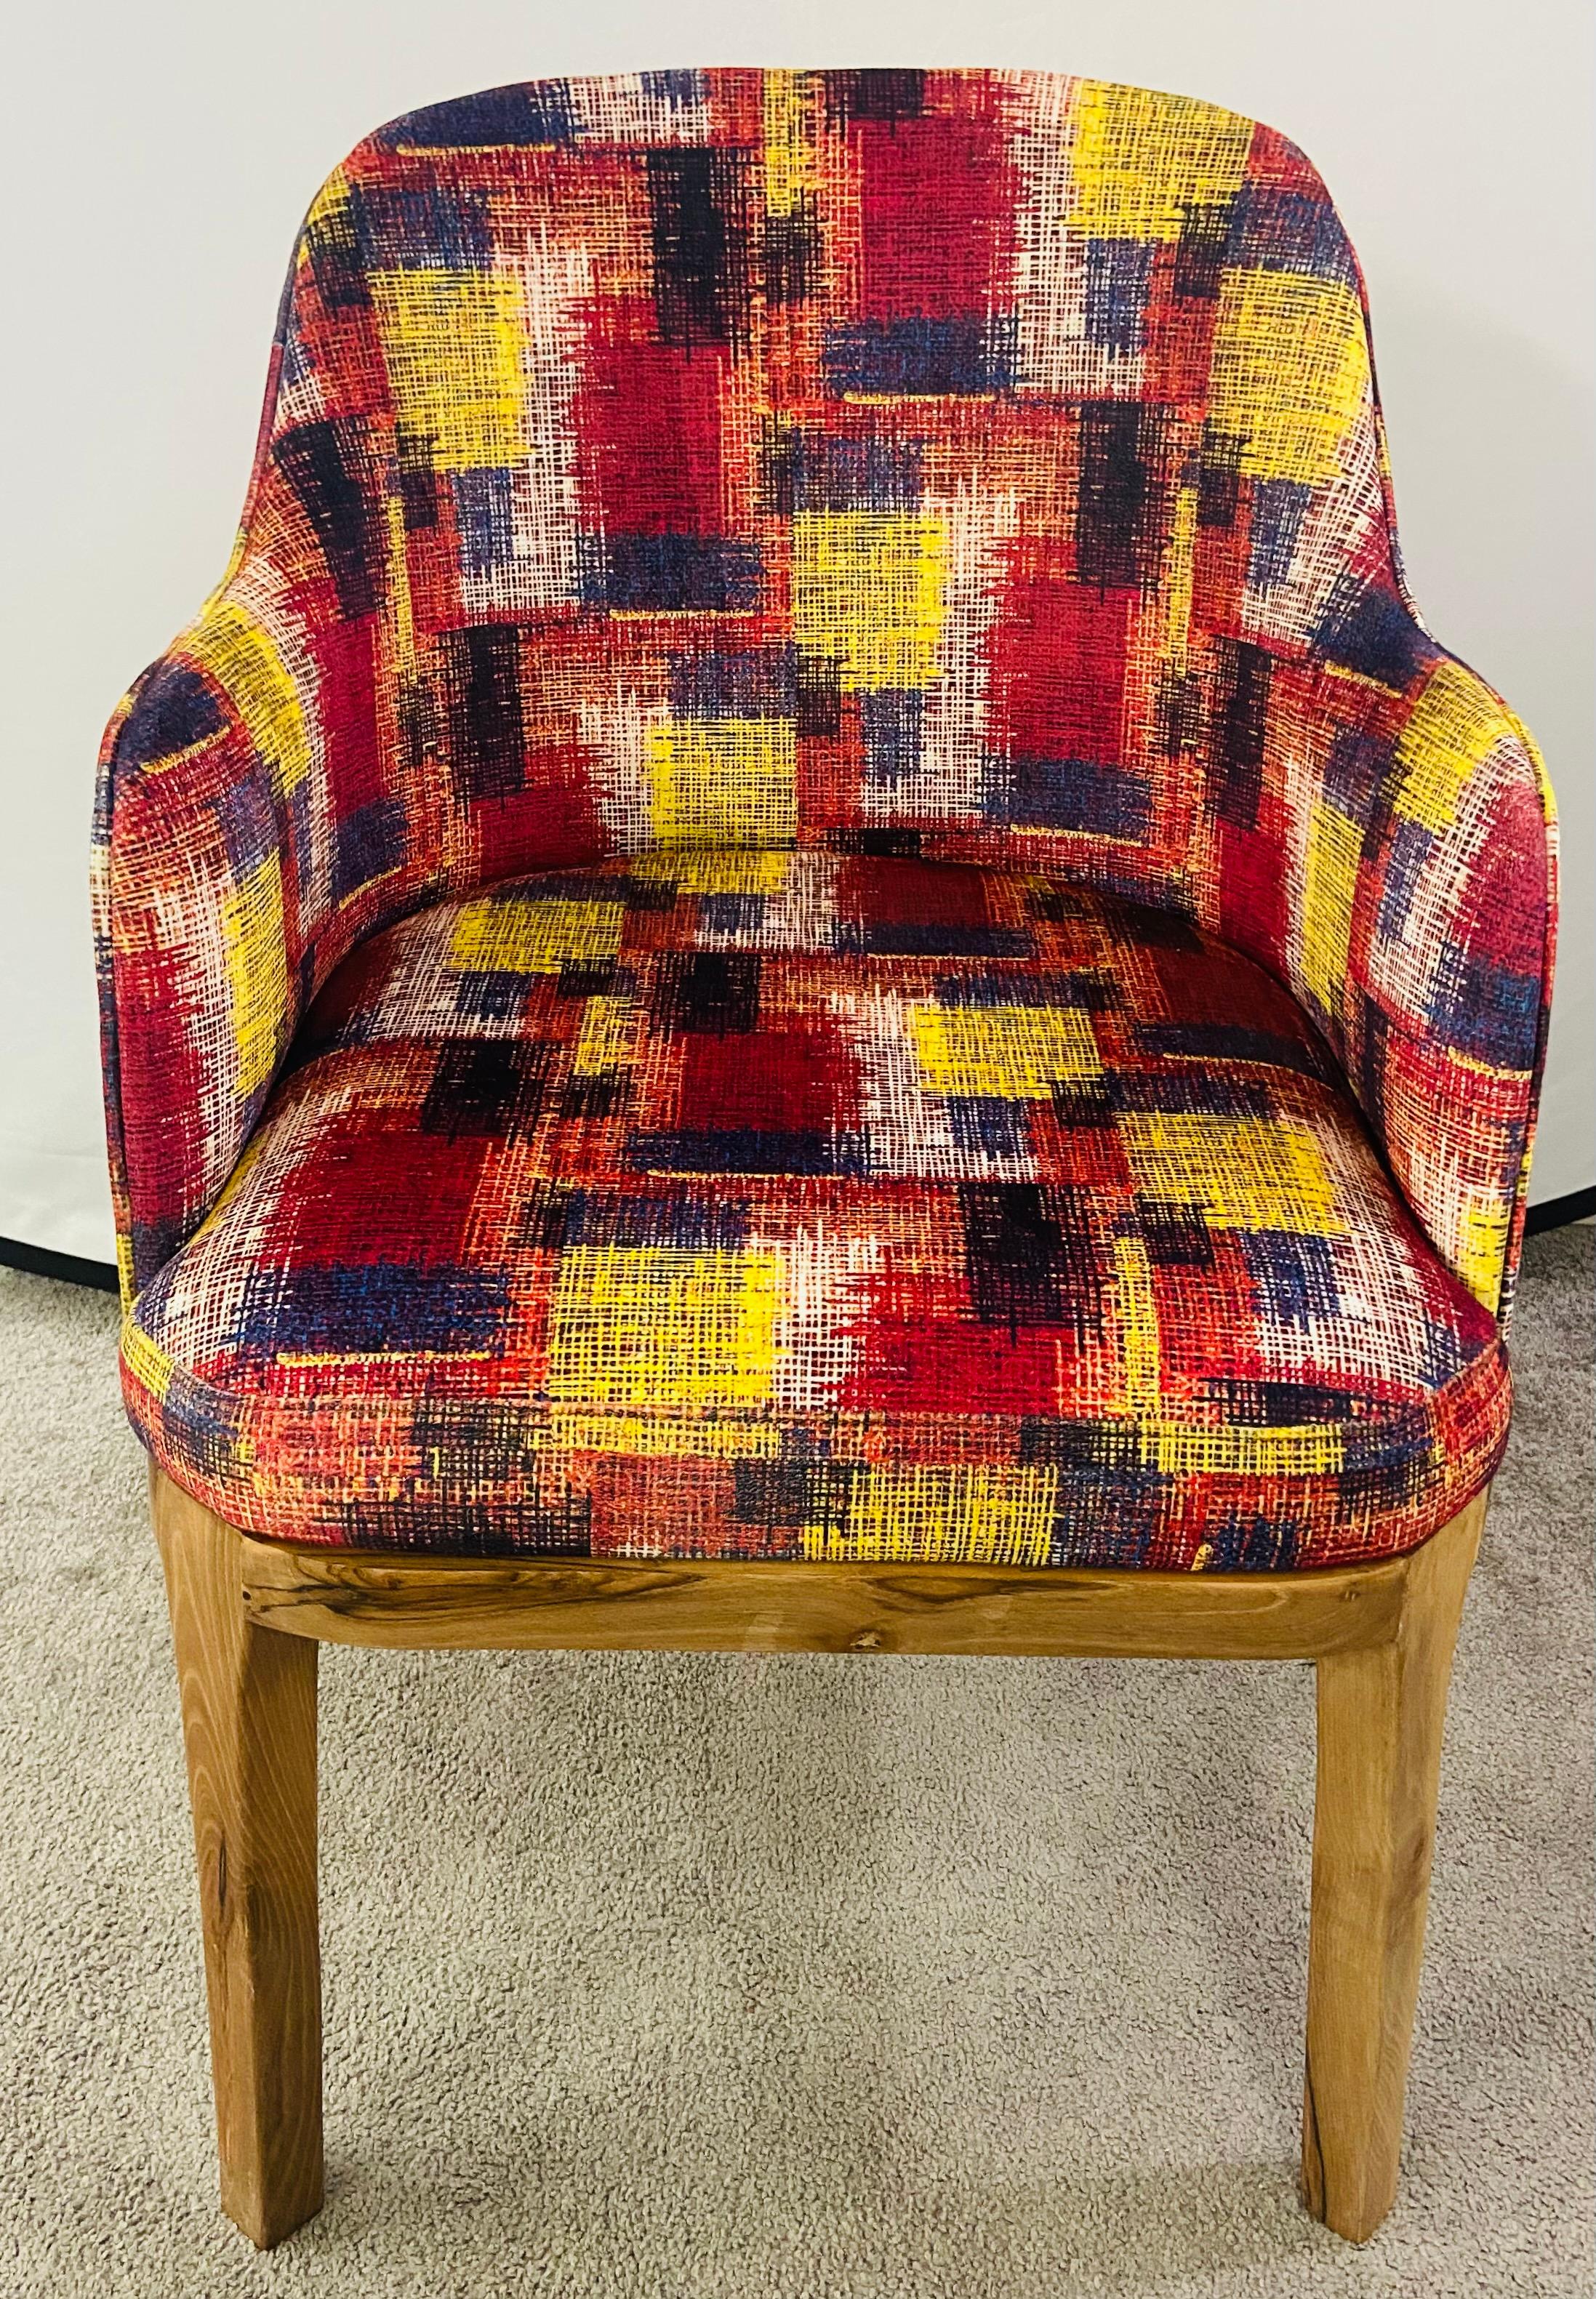 Une paire élégante de chaises baril de style Mid Century Modern. Les chaises présentent un revêtement récent dans des couleurs vives de bleu foncé, jaune et canneberge. Les chaises de haute qualité sont fabriquées en bois de noyer. La couleur